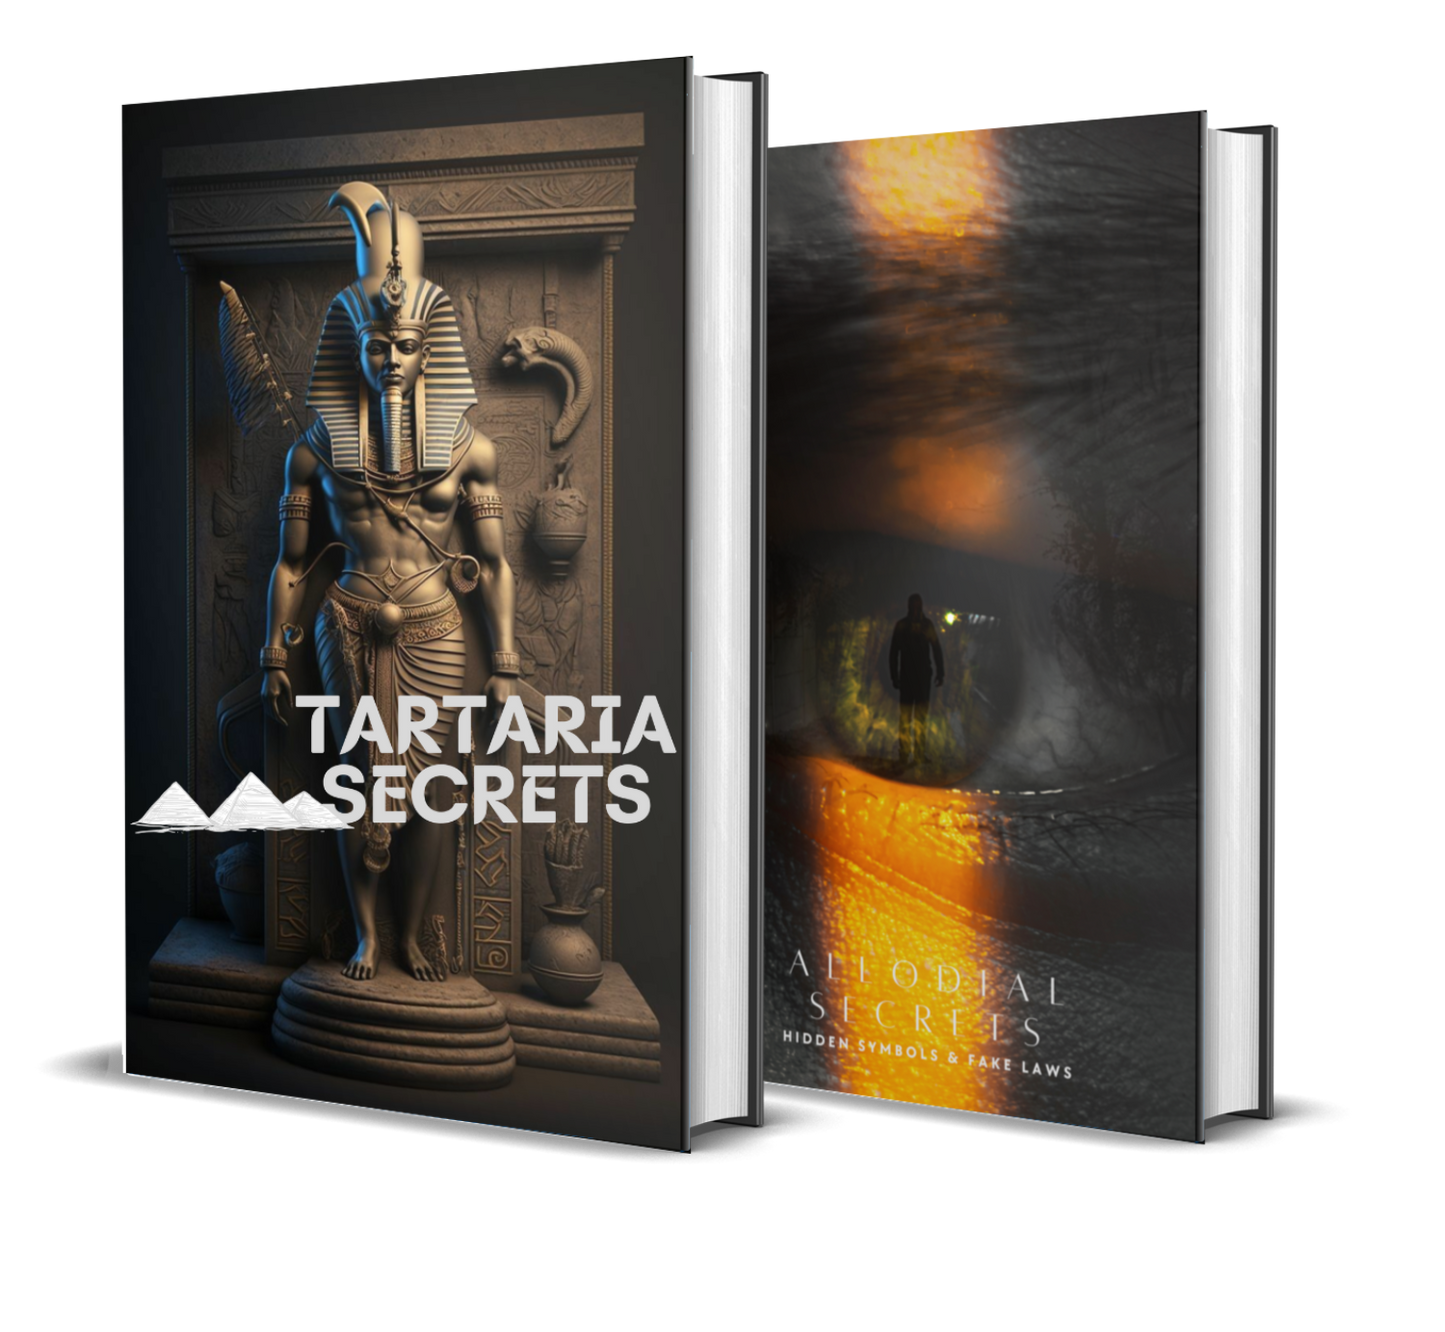 Tartaria Secrets + (FREE) Allodial Secrets (Hidden Symbols & Fake Laws)